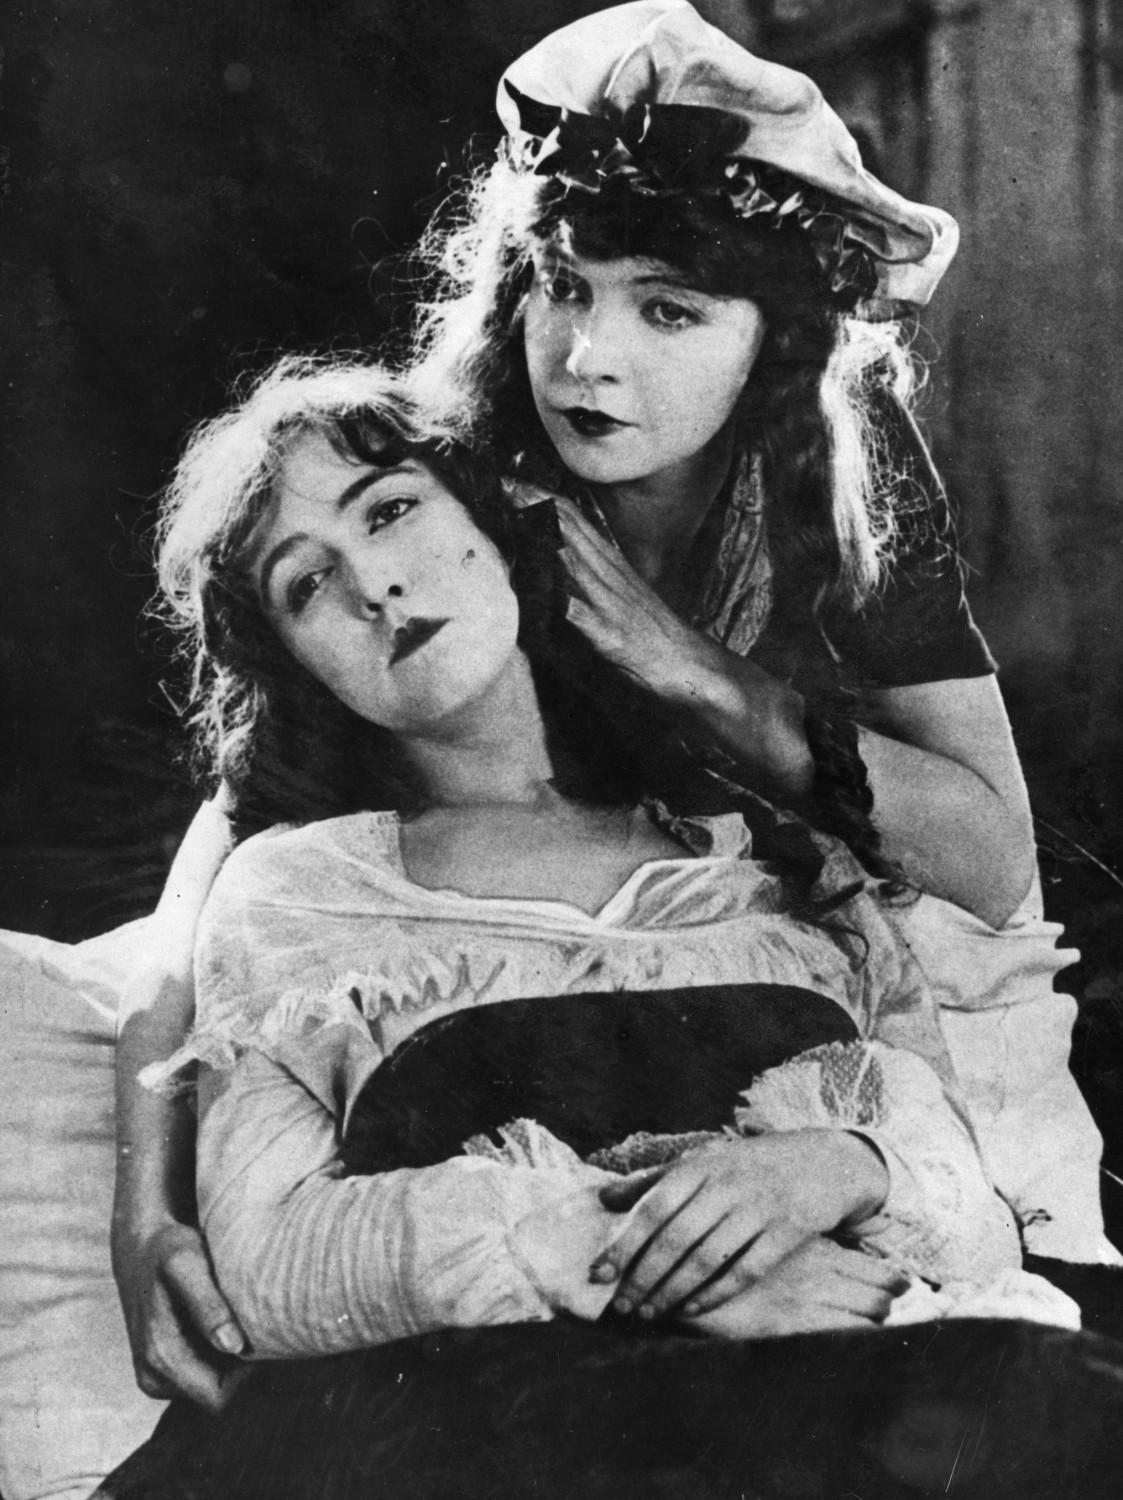 Dorothy and Lillian Gish